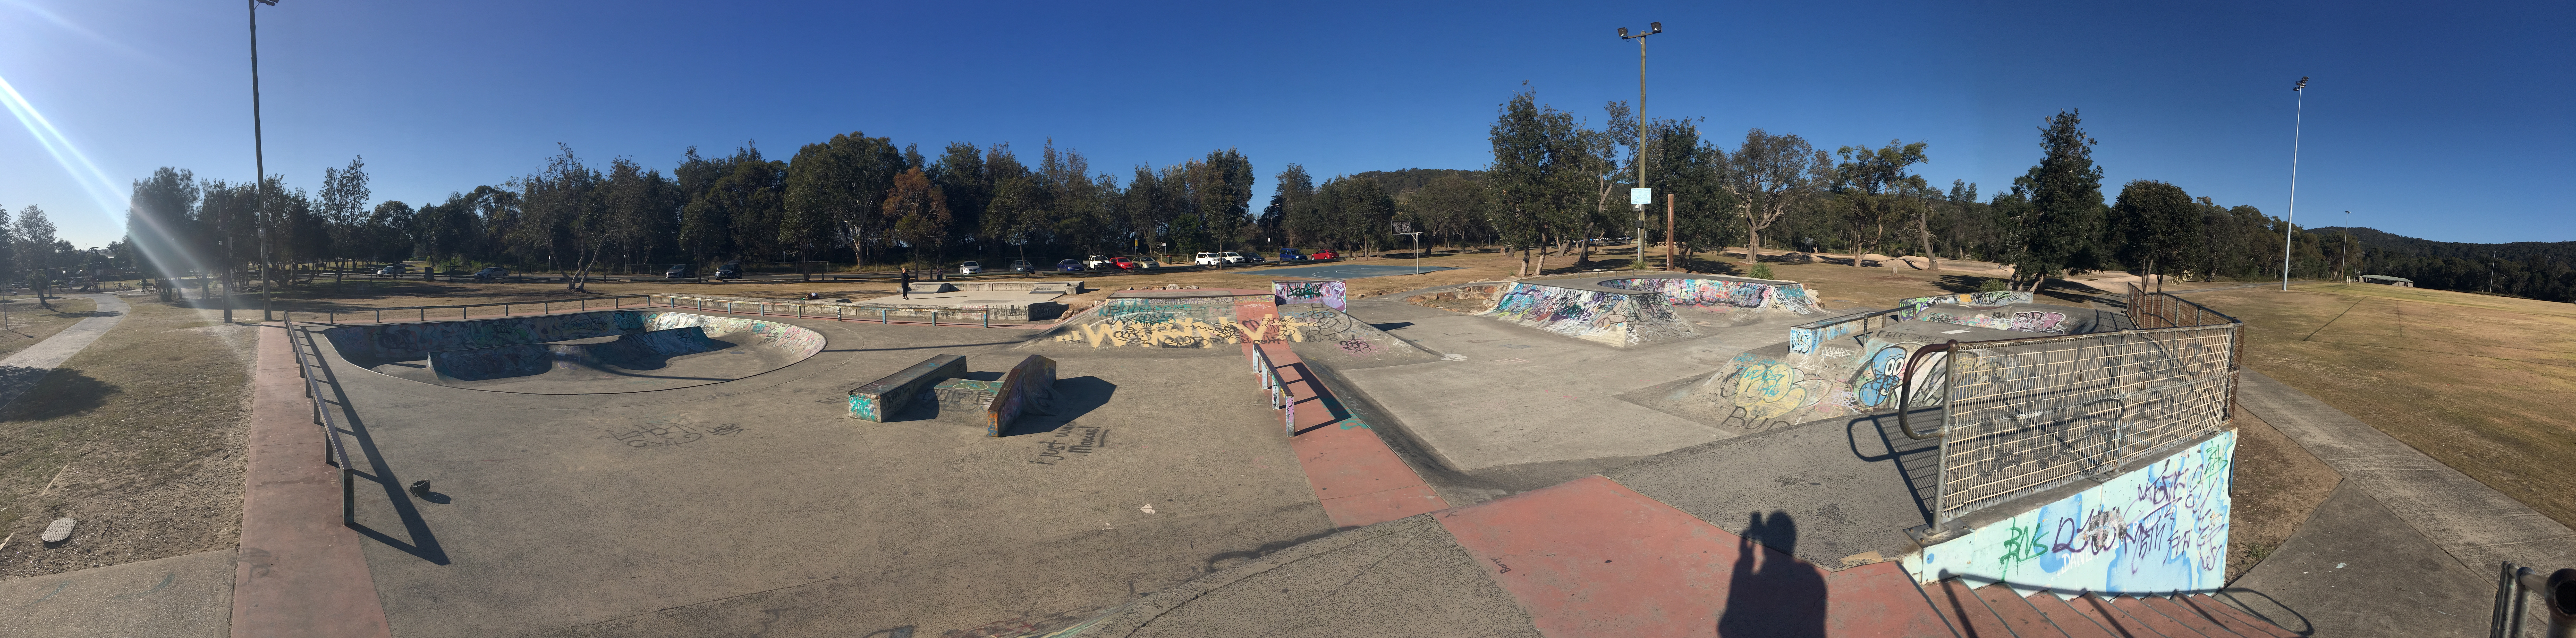 Umina skate park